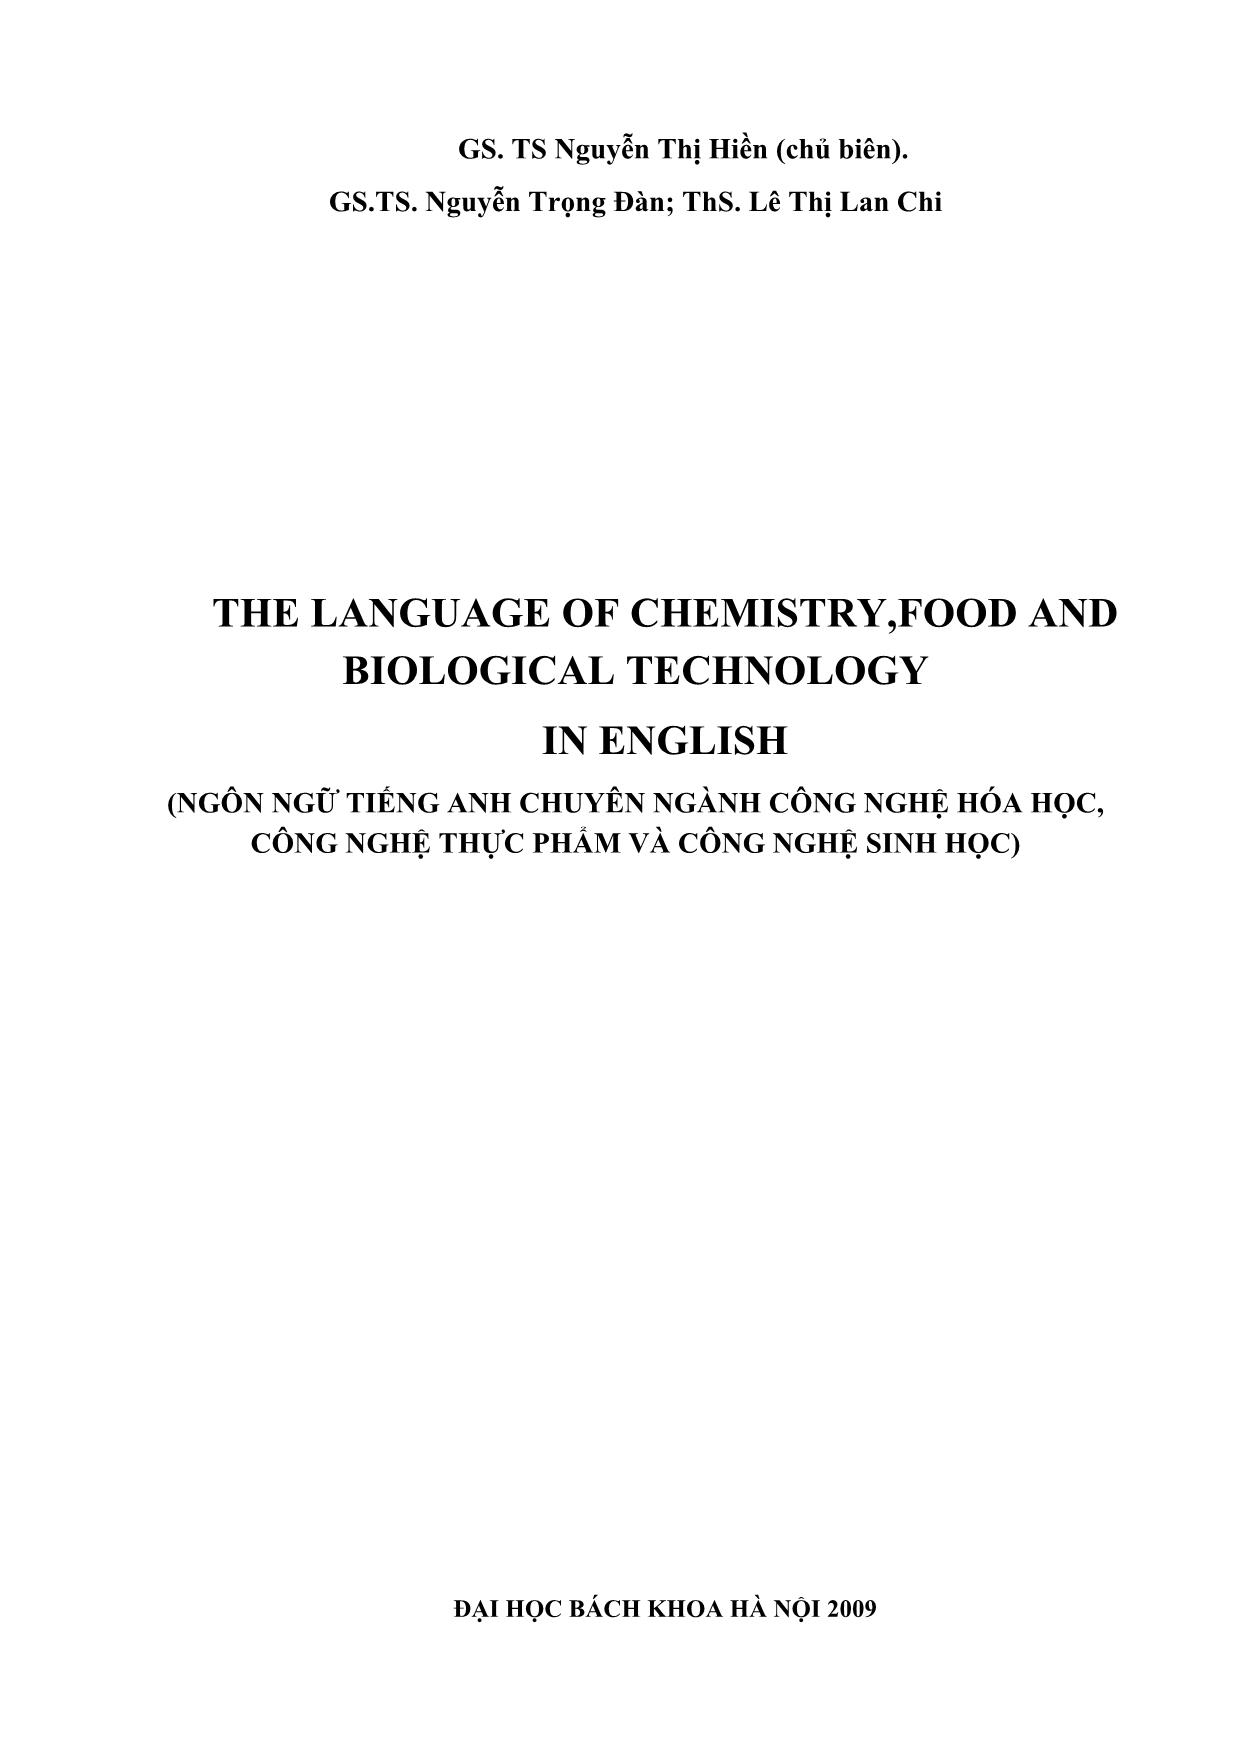 Ngôn ngữ tiếng anh chuyên ngành công nghệ hóa học, công nghệ thực phẩm và công nghệ sinh học trang 1